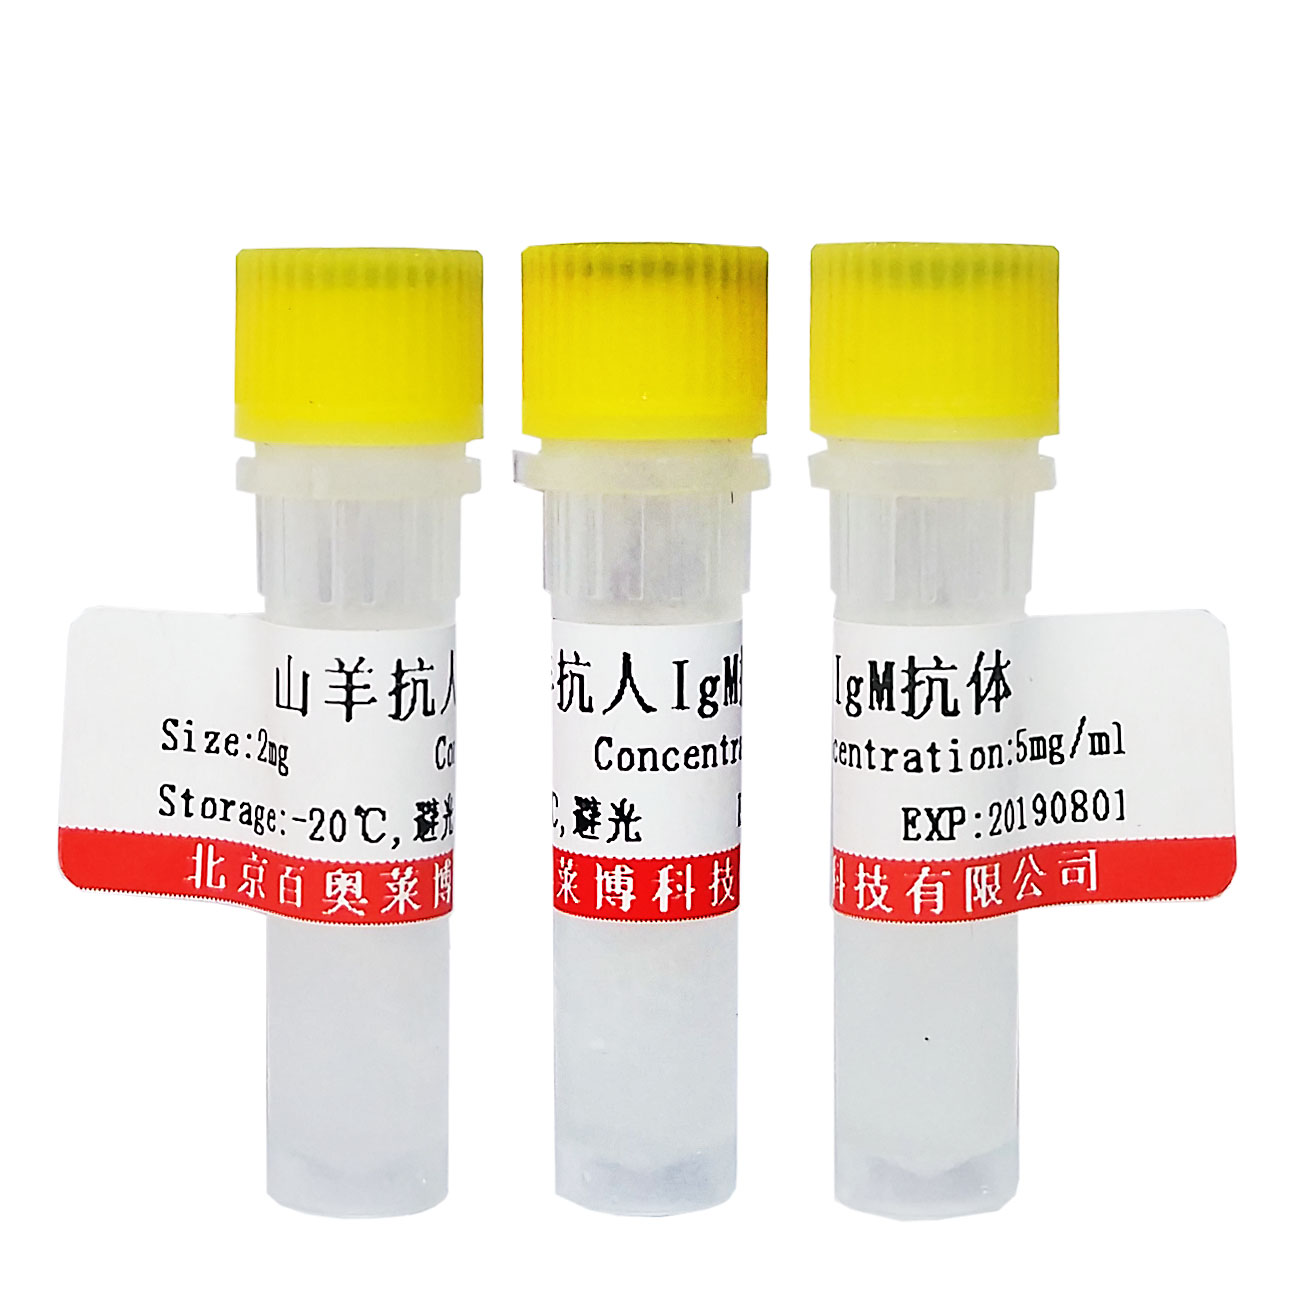 人血清IgM(液体)70～80%纯度,4mg/ml浓度